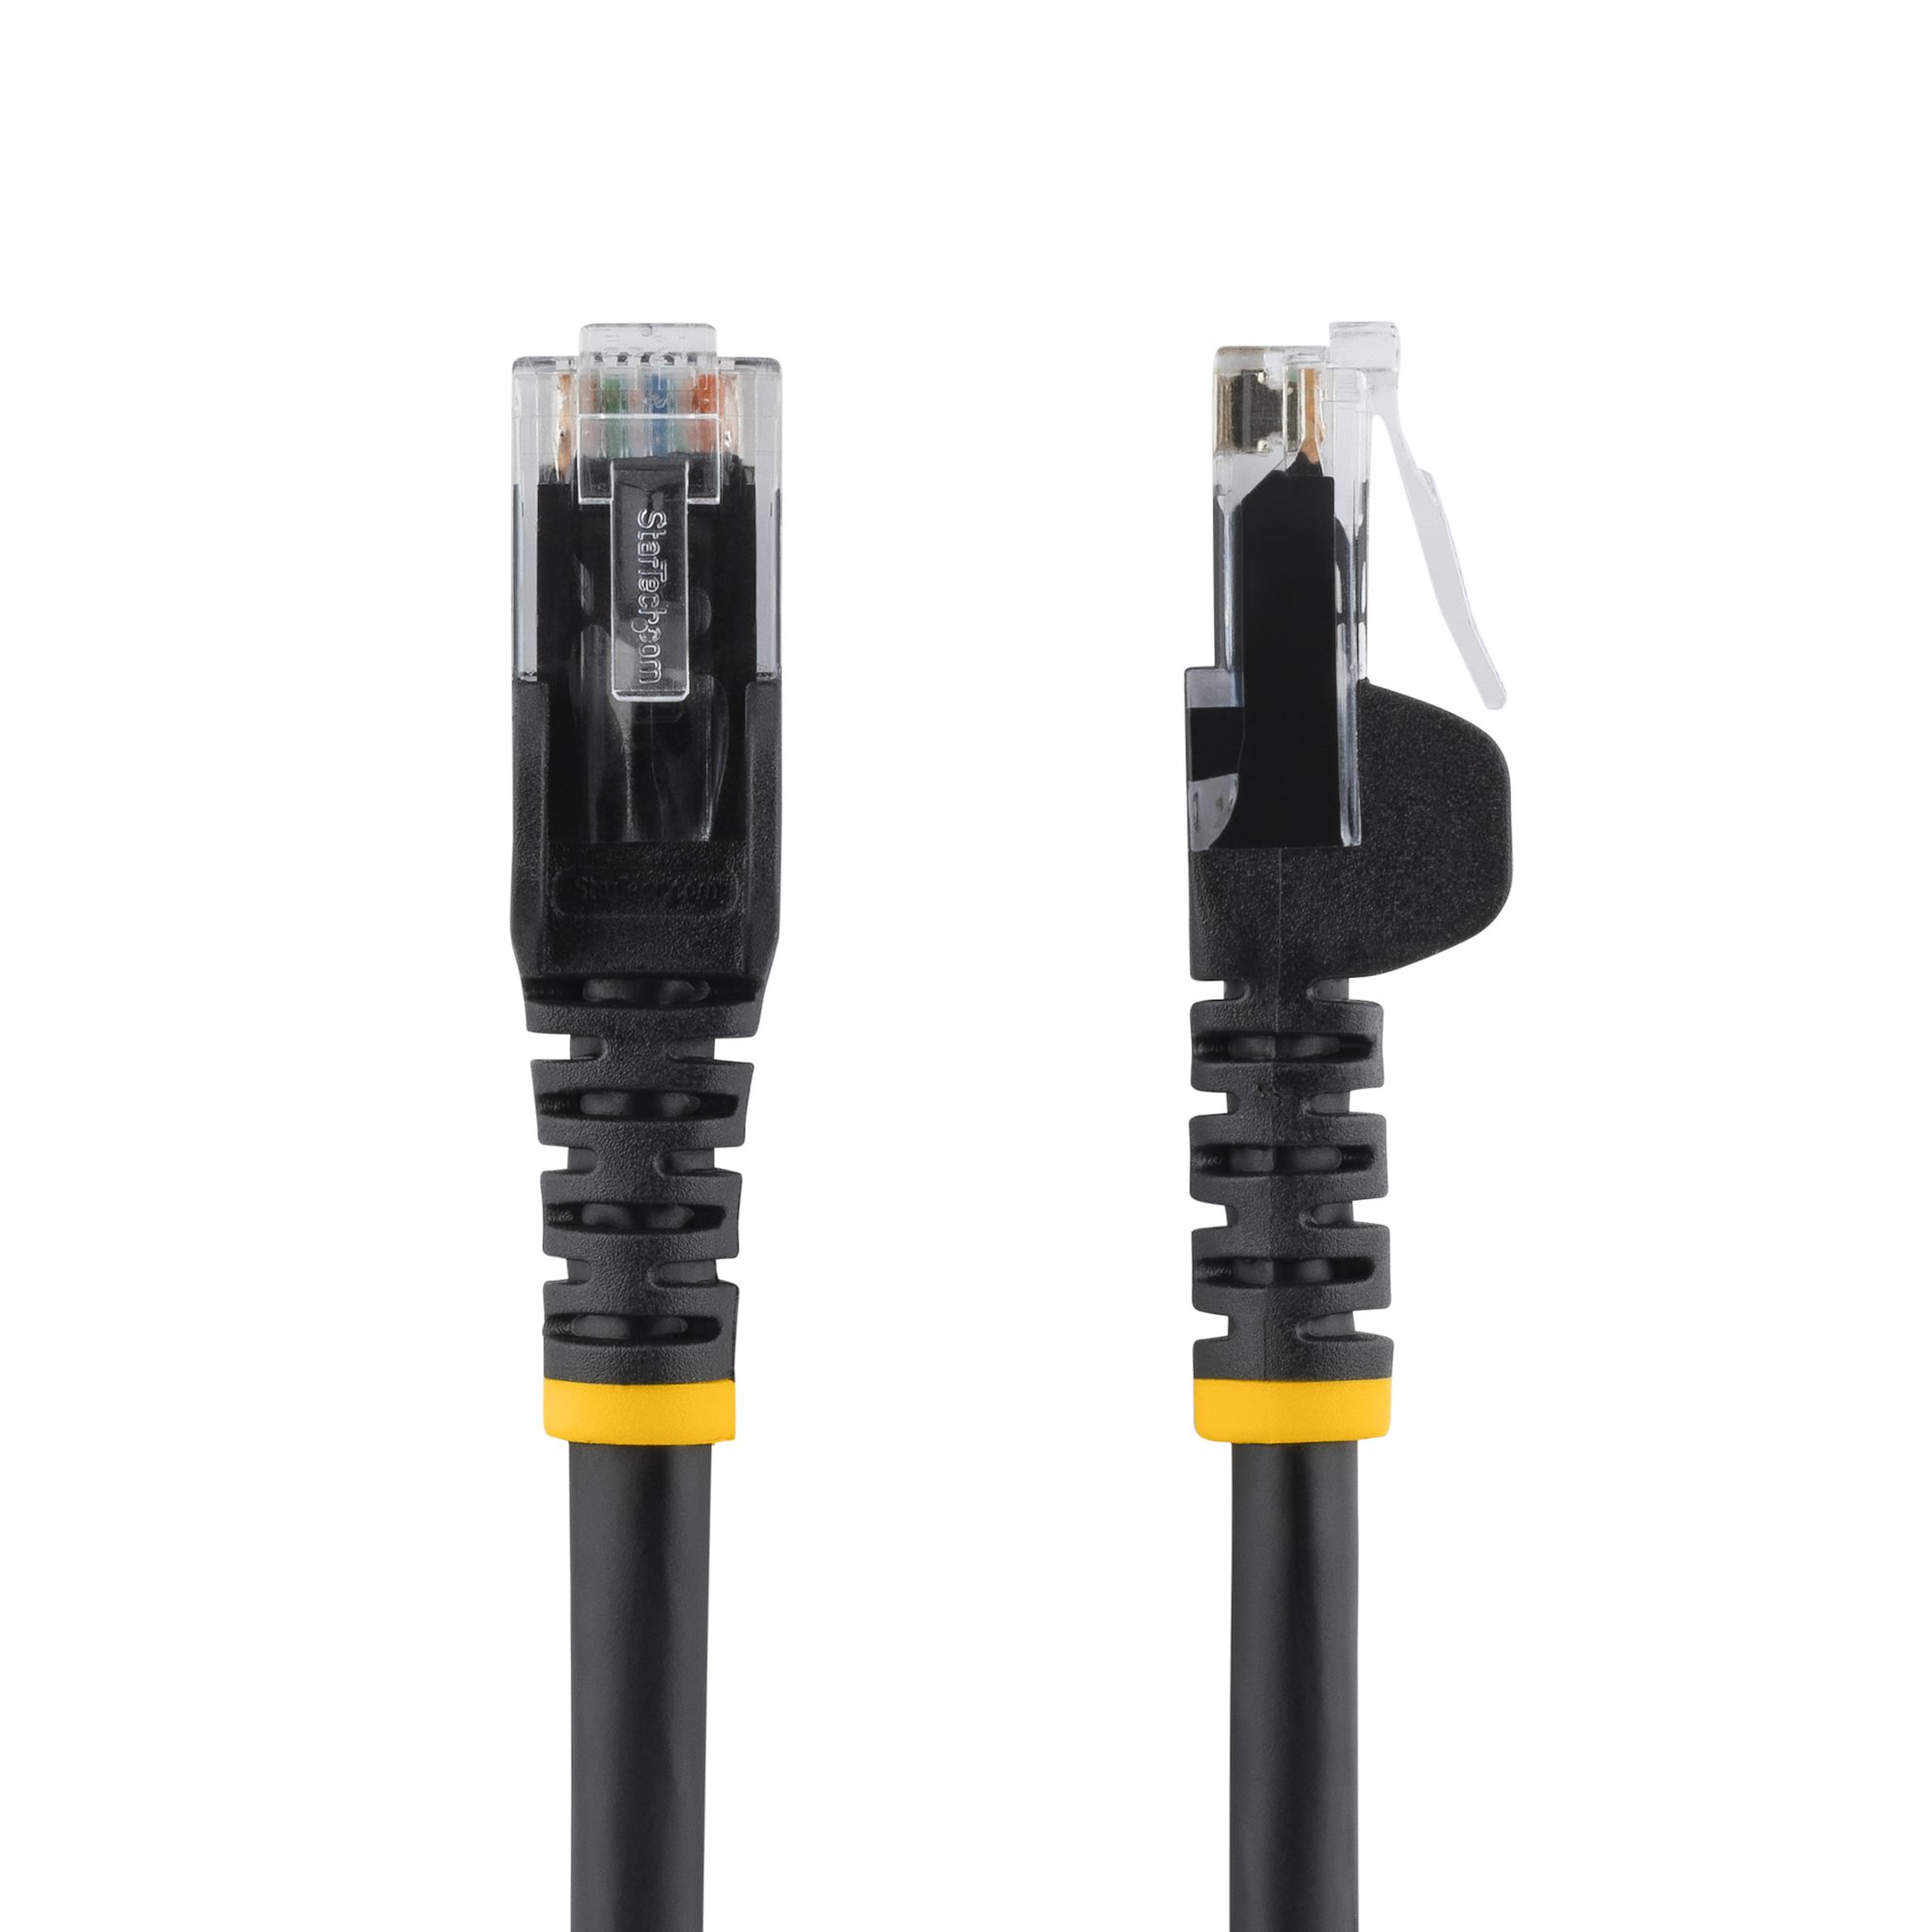 Cable de Red Cat6 Azul 7.6m - Pack de 10 - Multipaquete de cables CAT6